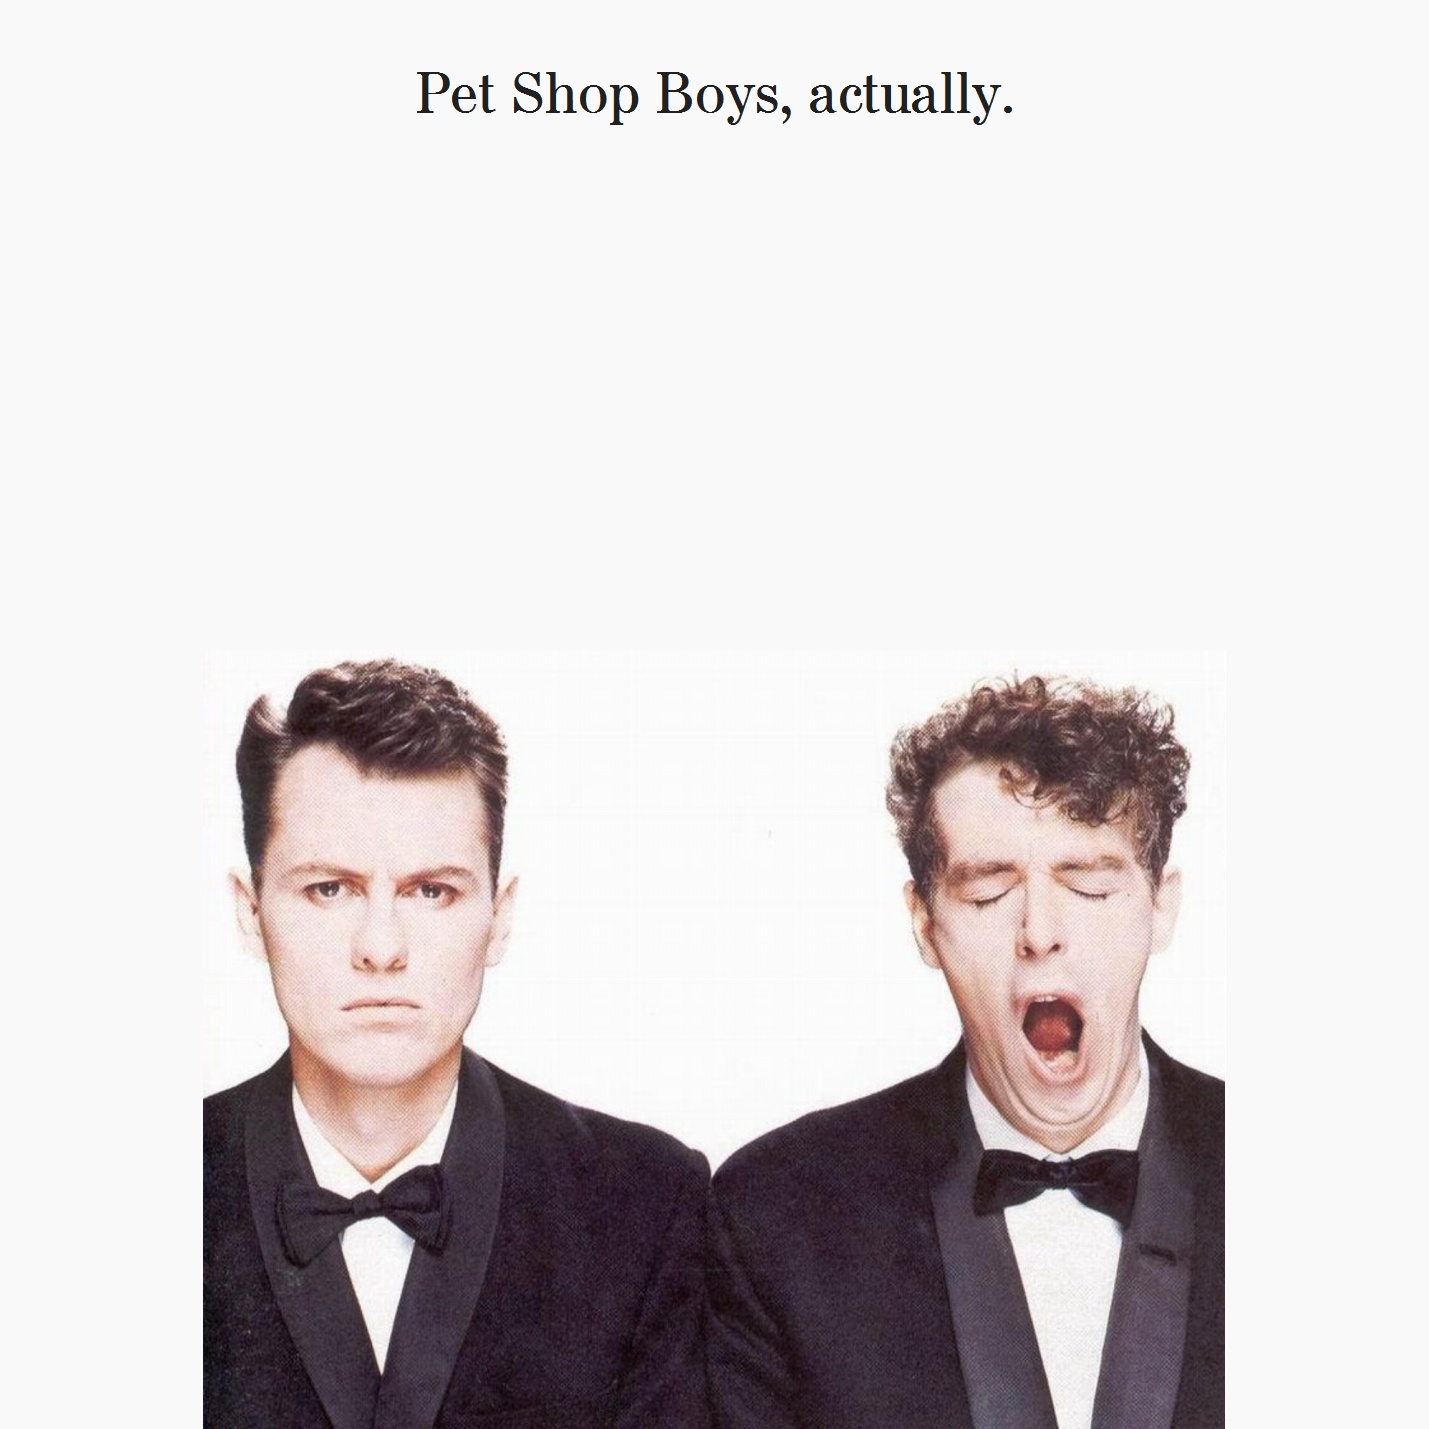 Pet Shop Boys Album Reviews - Aphoristic Album Reviews